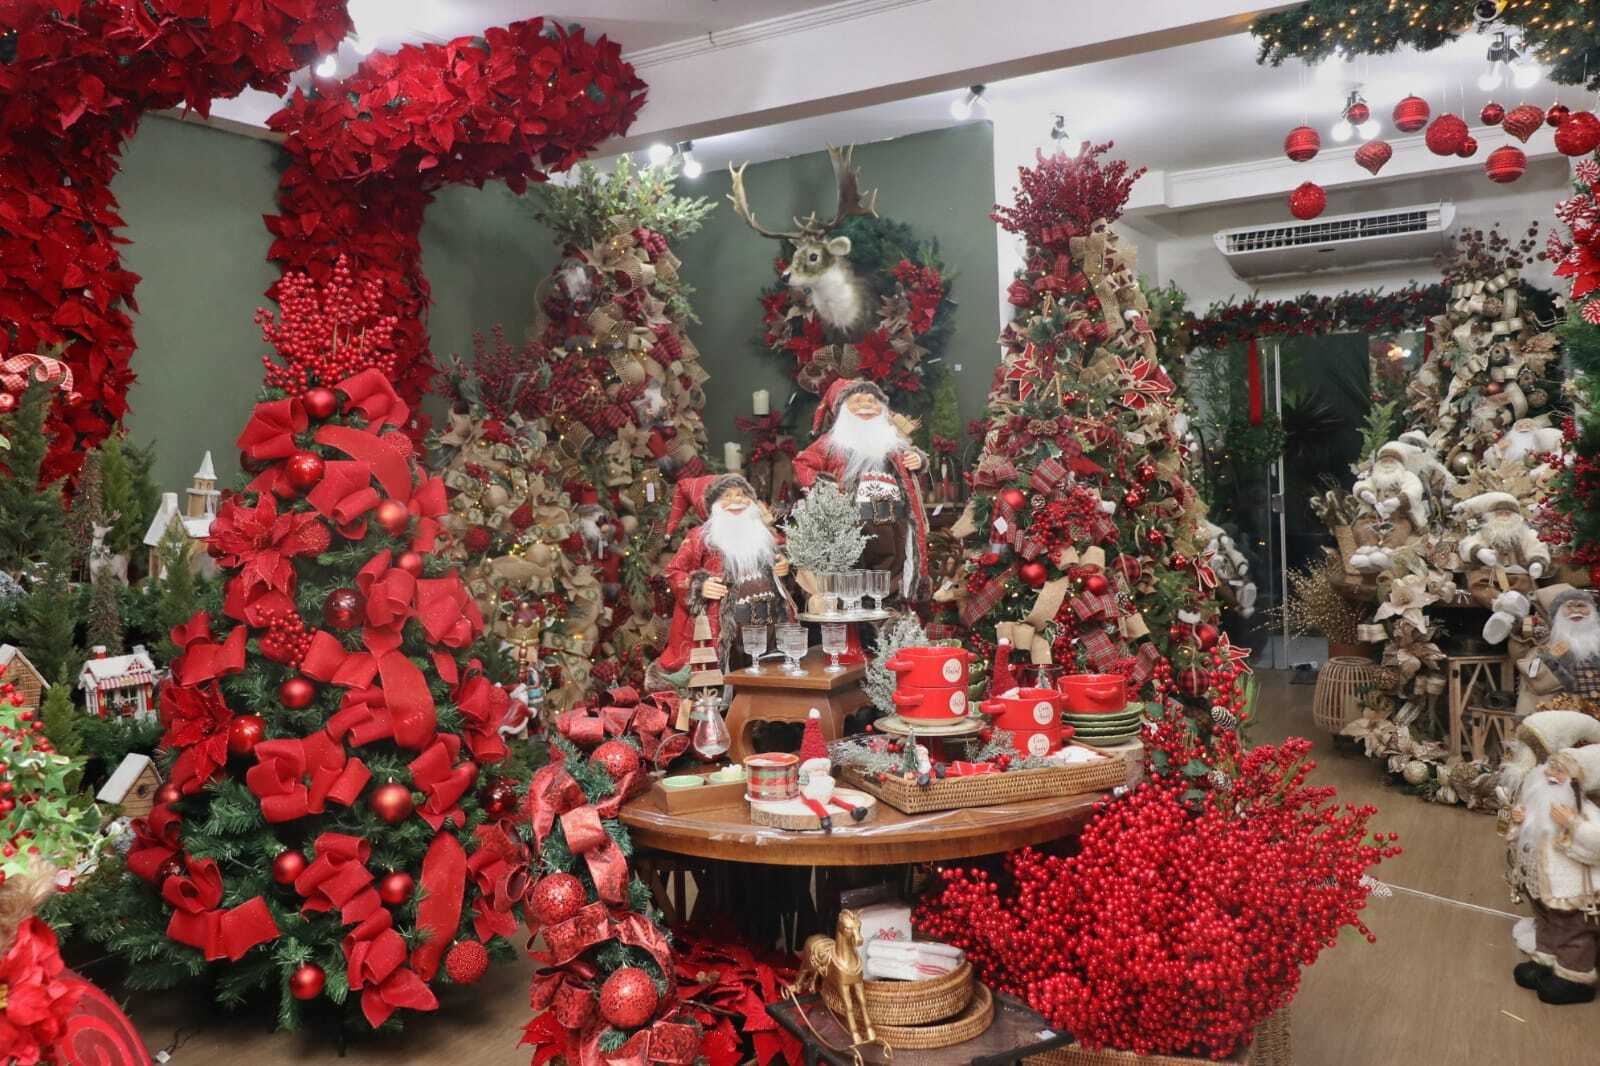 Comerciantes antecipam vendas do Natal, mas demanda ainda é tímida -  Economia - Campo Grande News